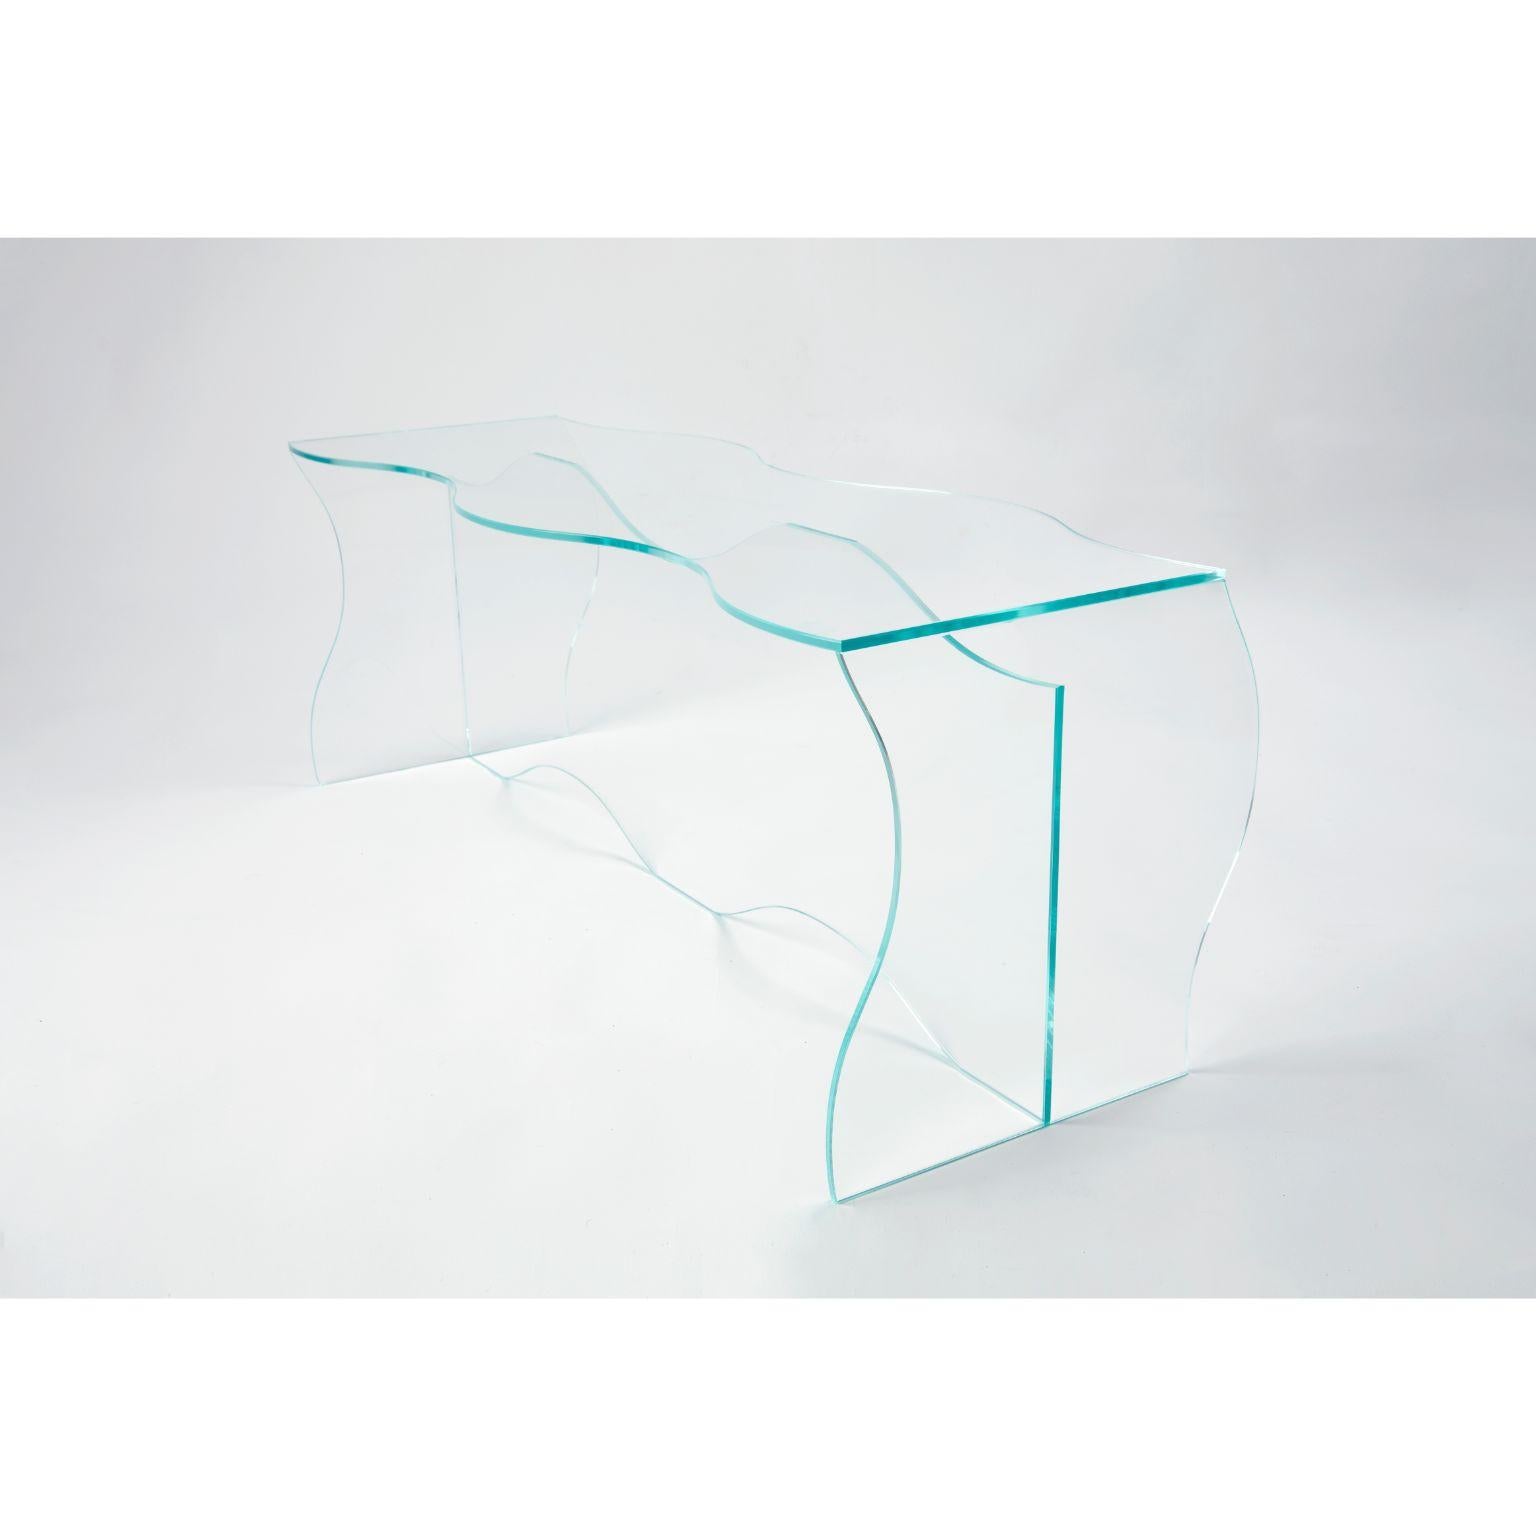 Wave Couchtisch aus klarem Glas, entworfen von Studio-Chacha
Abmessungen: 40 x 110 x 40 cm
MATERIALIEN: Klarglas 

Studio-Chacha ist ein 2017 gegründetes High-End-Kunstmöbelstudio, das eine neue Ästhetik mit einer ungewohnten Kombination aus